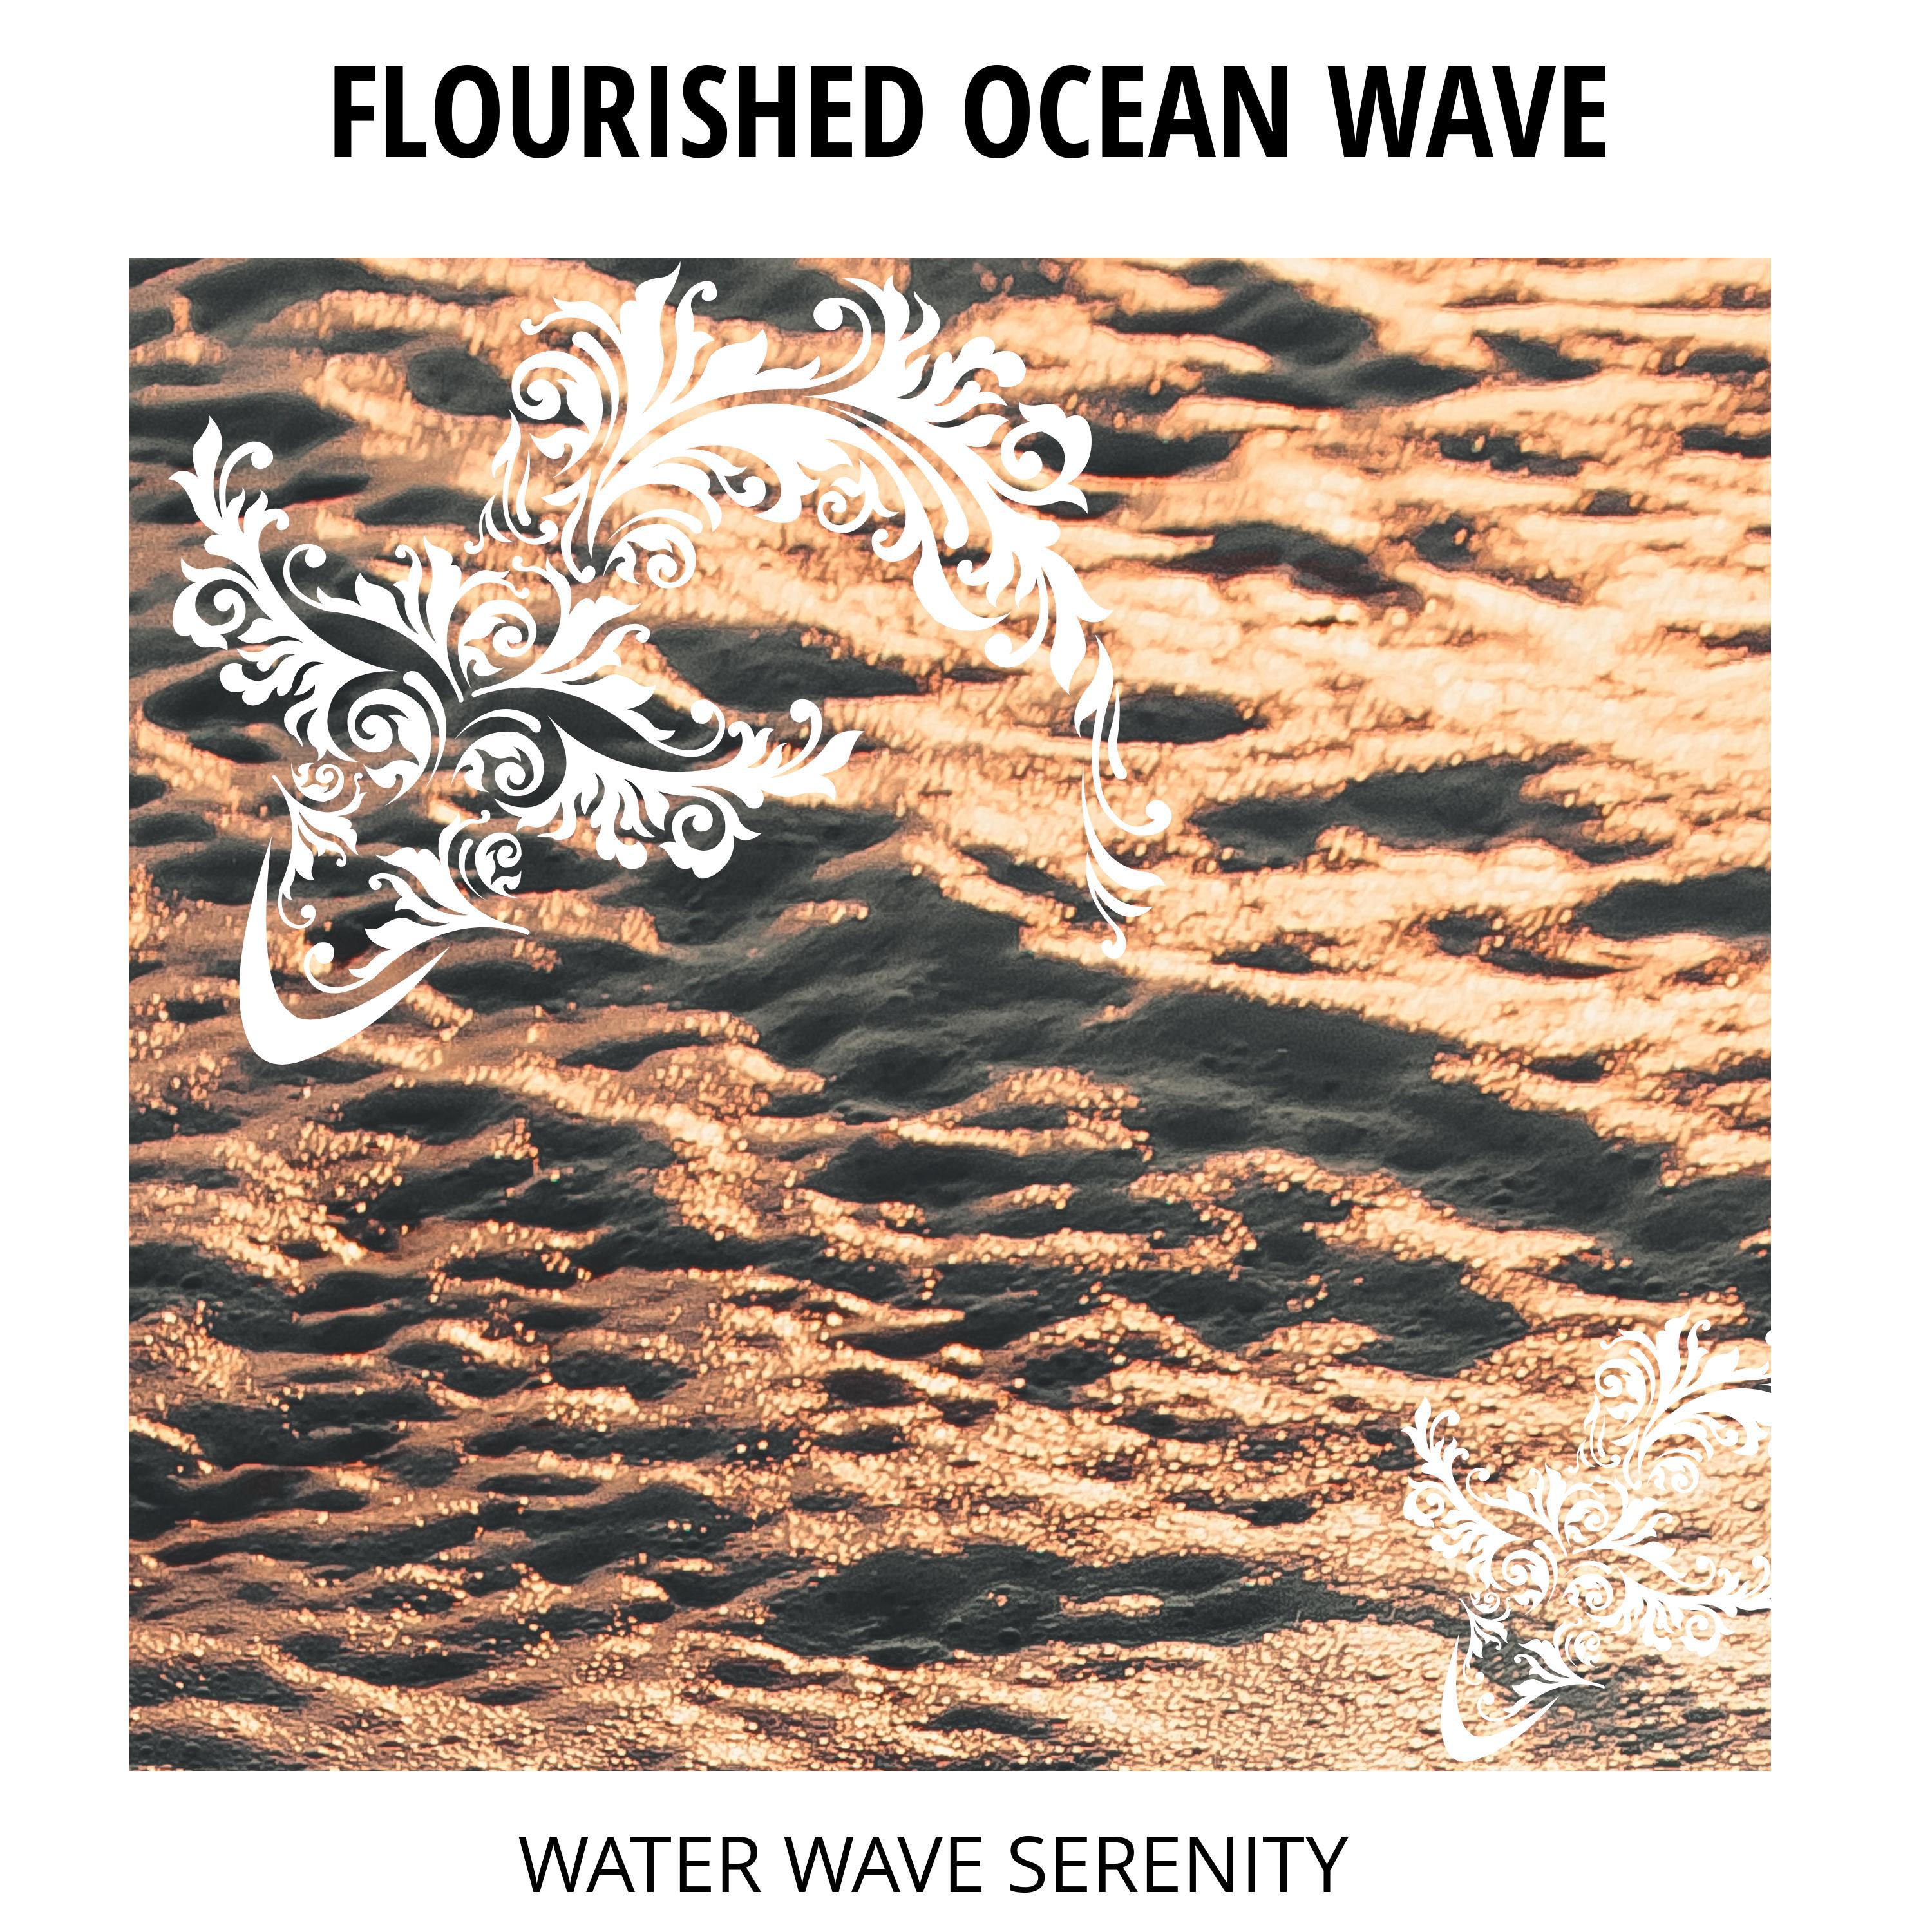 Highrise Ocean Waves Music - Deep in the Ocean Waves